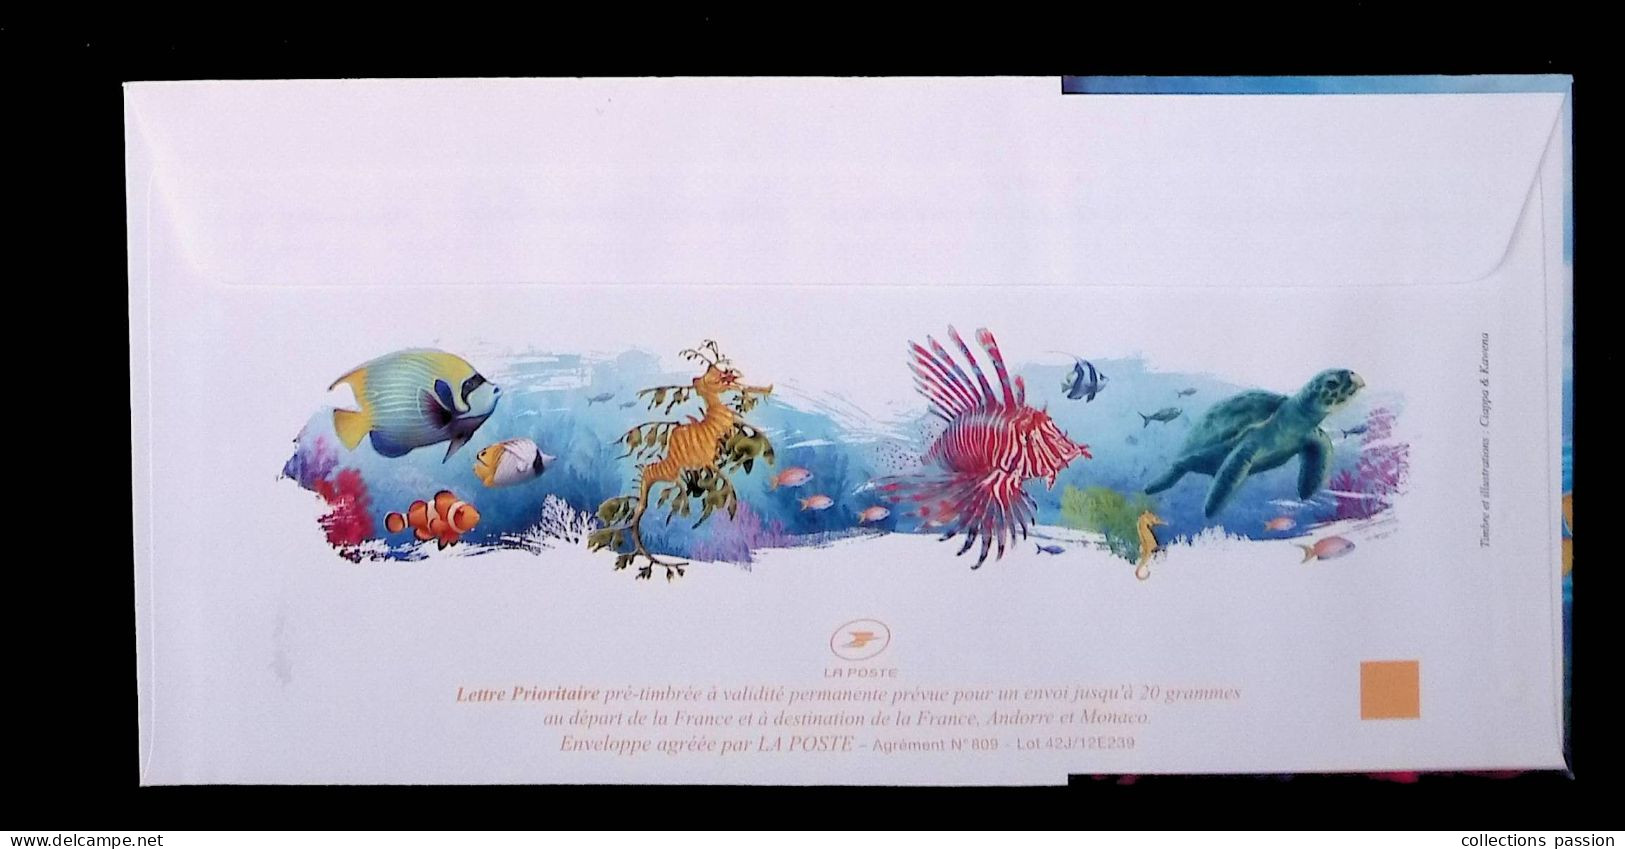 Lettre Prioritaire 20 Gr., Entier Postal, Prêt à Poster, France, Neuf, Ange De Mer Impérial, 2 Scans, Frais Fr: 1.85 E - Prêts-à-poster: Other (1995-...)